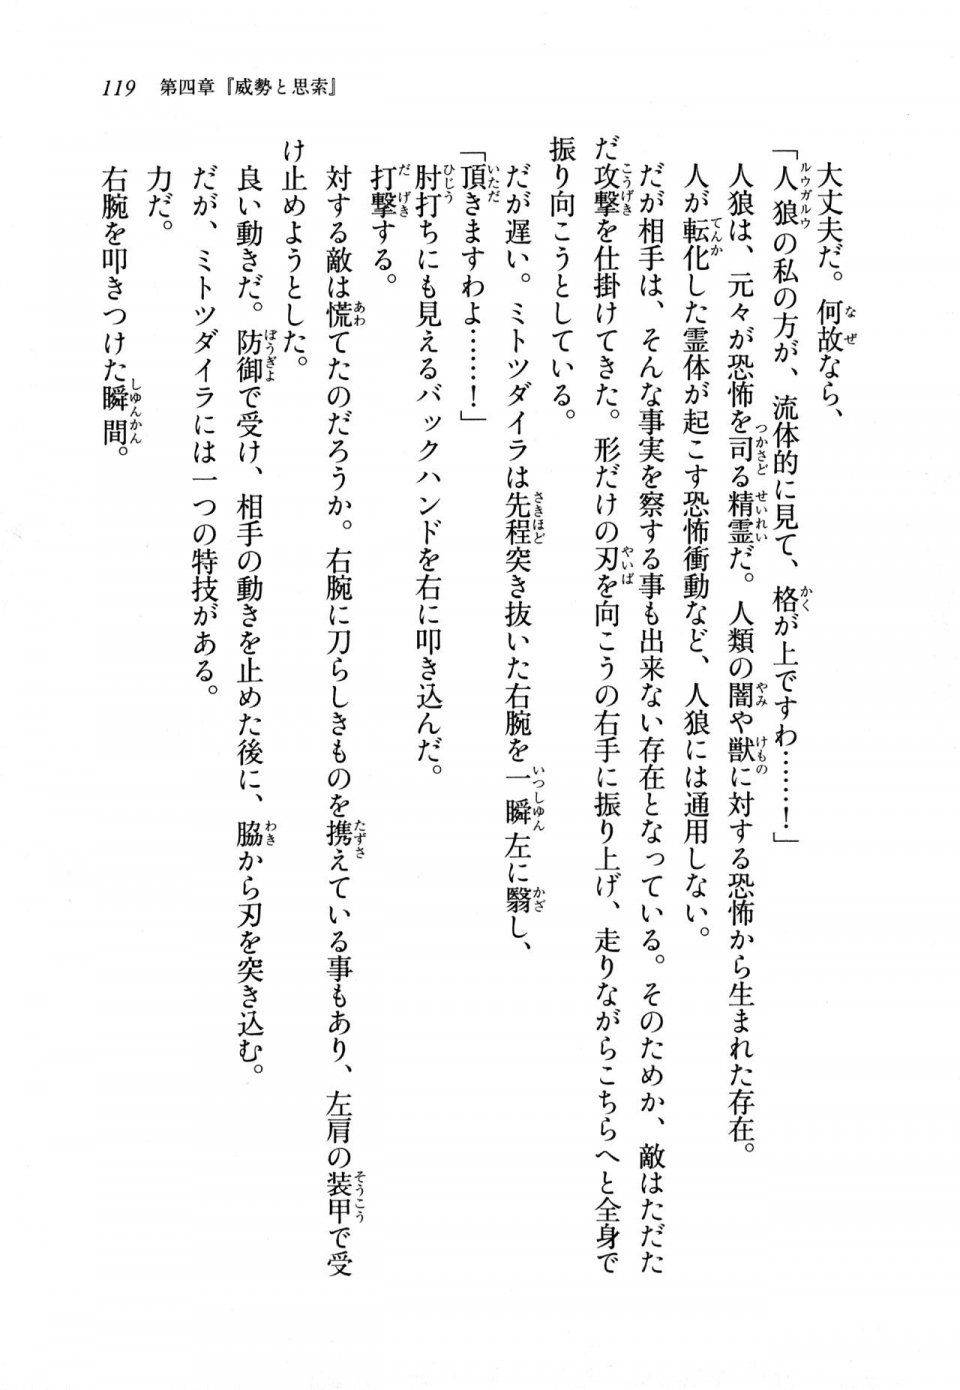 Kyoukai Senjou no Horizon LN Sidestory Vol 1 - Photo #117